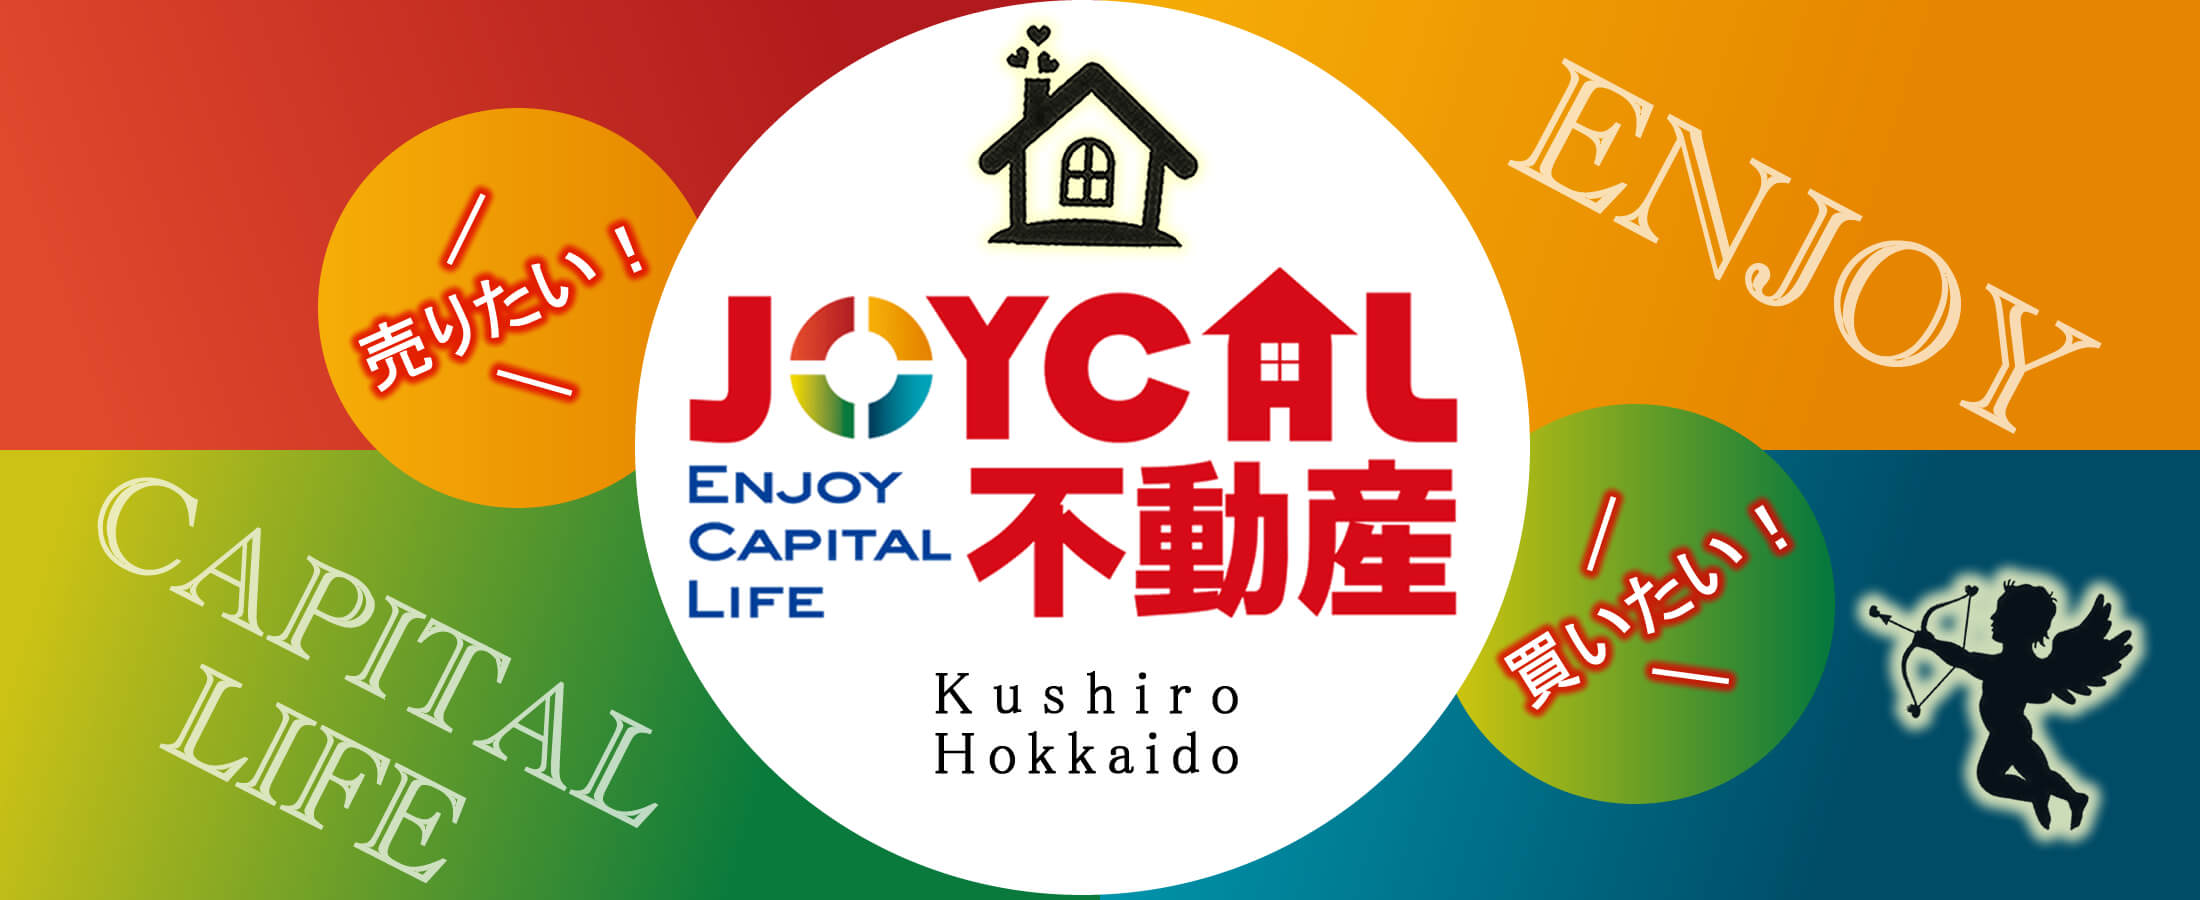 釧路「ジョイカル不動産」の公式ホームページです。